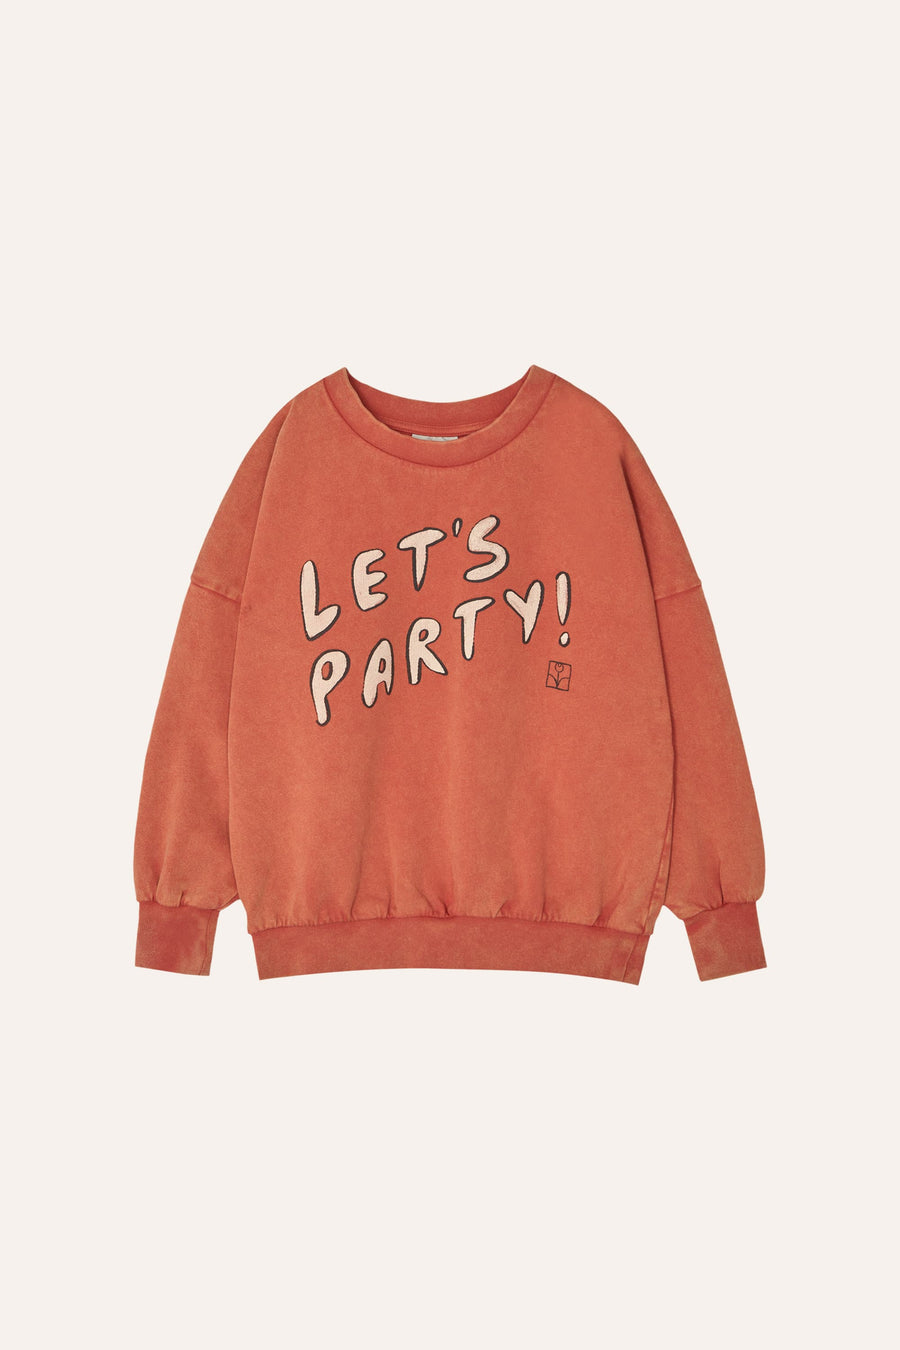 Lets Party Oversized Kids Sweatshirt - Parkette.